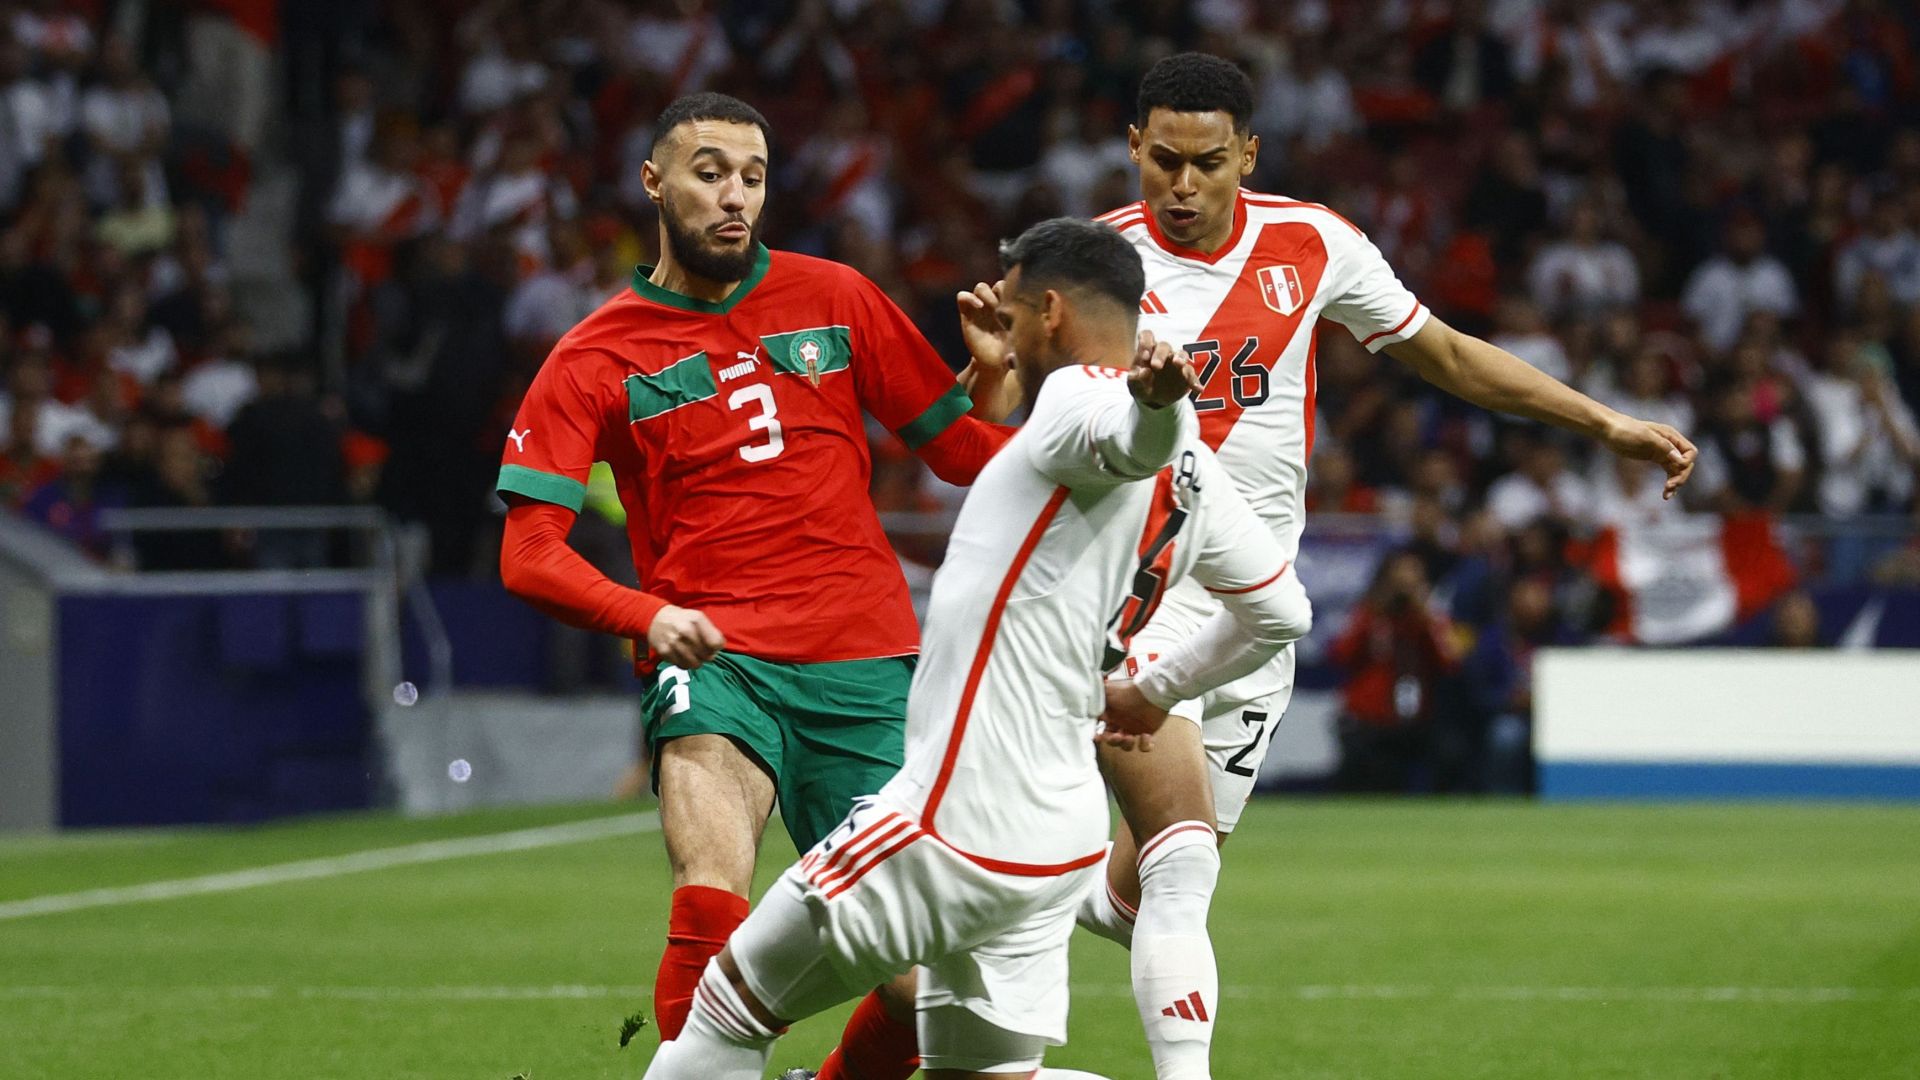 Ver EN VIVO Perú vs Marruecos HOY: empatan 0-0 en amistoso